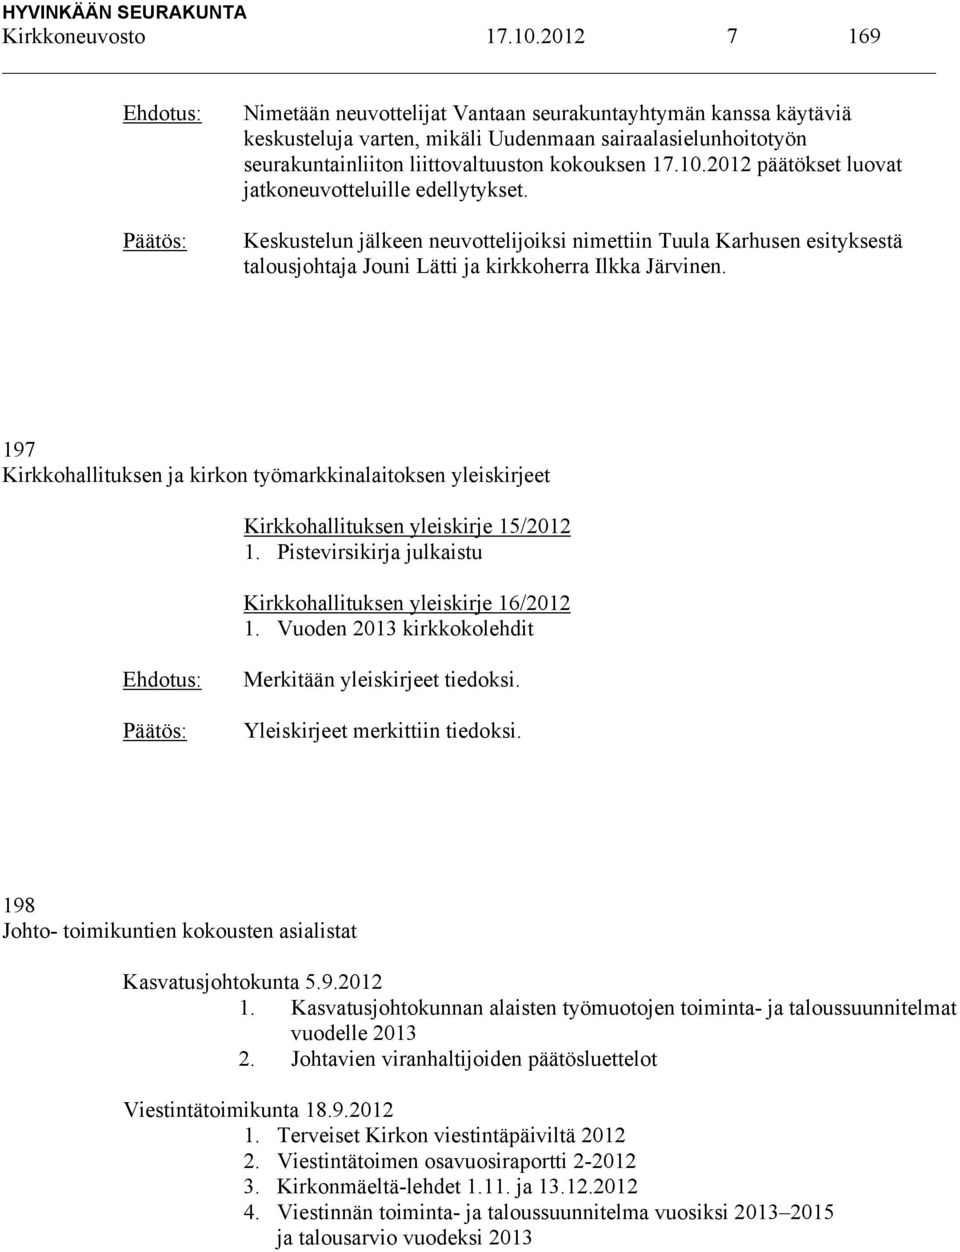 2012 päätökset luovat jatkoneuvotteluille edellytykset. Keskustelun jälkeen neuvottelijoiksi nimettiin Tuula Karhusen esityksestä talousjohtaja Jouni Lätti ja kirkkoherra Ilkka Järvinen.